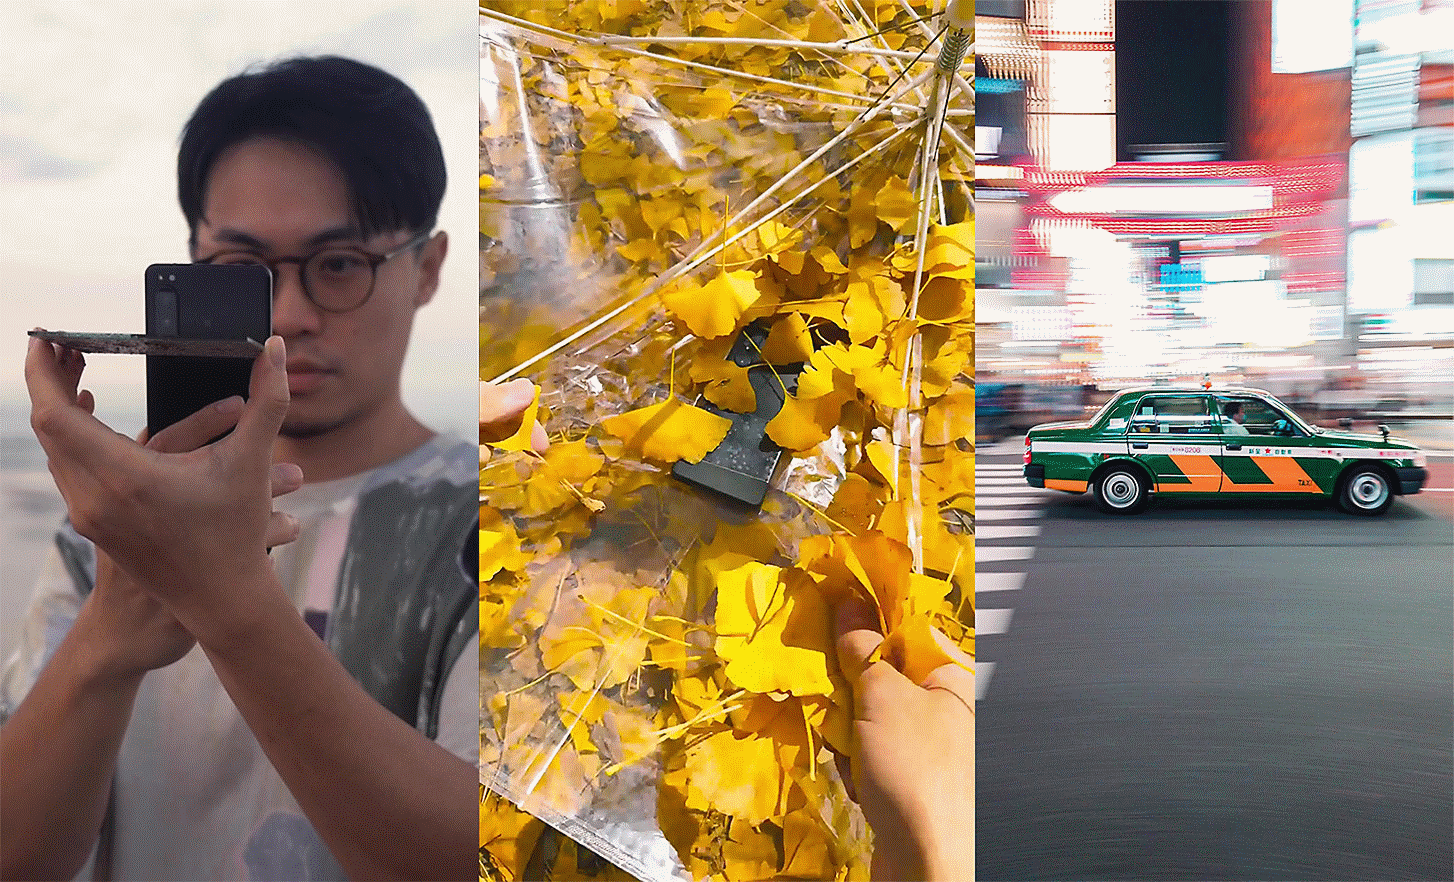 Tre immagini affiancate, sulla sinistra una persona che scatta una foto, al centro immagine di un telefono tra delle foglie e sulla destra auto su strada cittadina